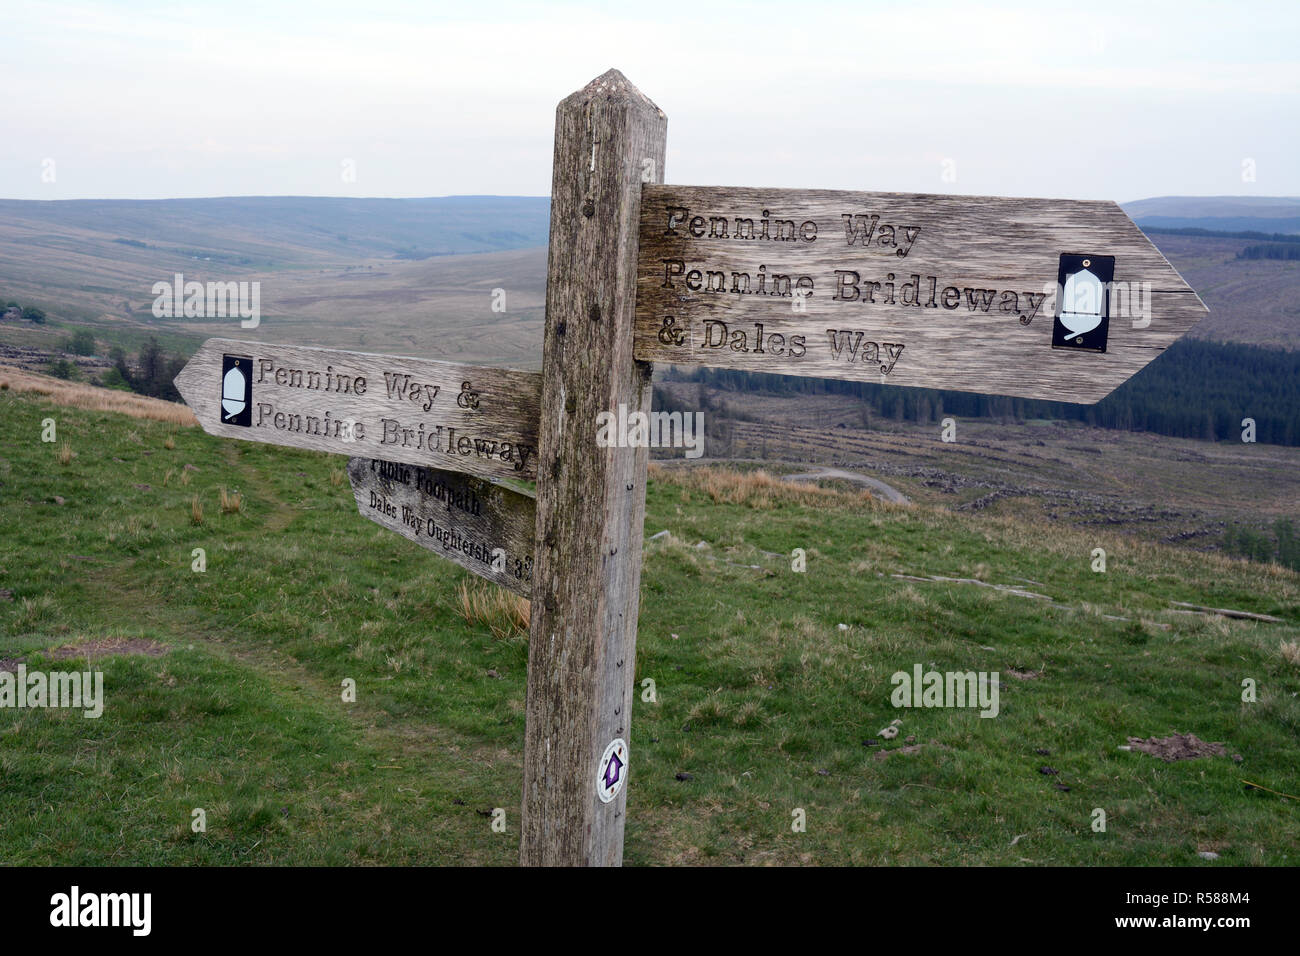 Ein Hinweisschild wandern Dales und Pennine Way Routen, wo beide Spuren überlappen, in Yorkshire, England, Vereinigtes Königreich. Stockfoto